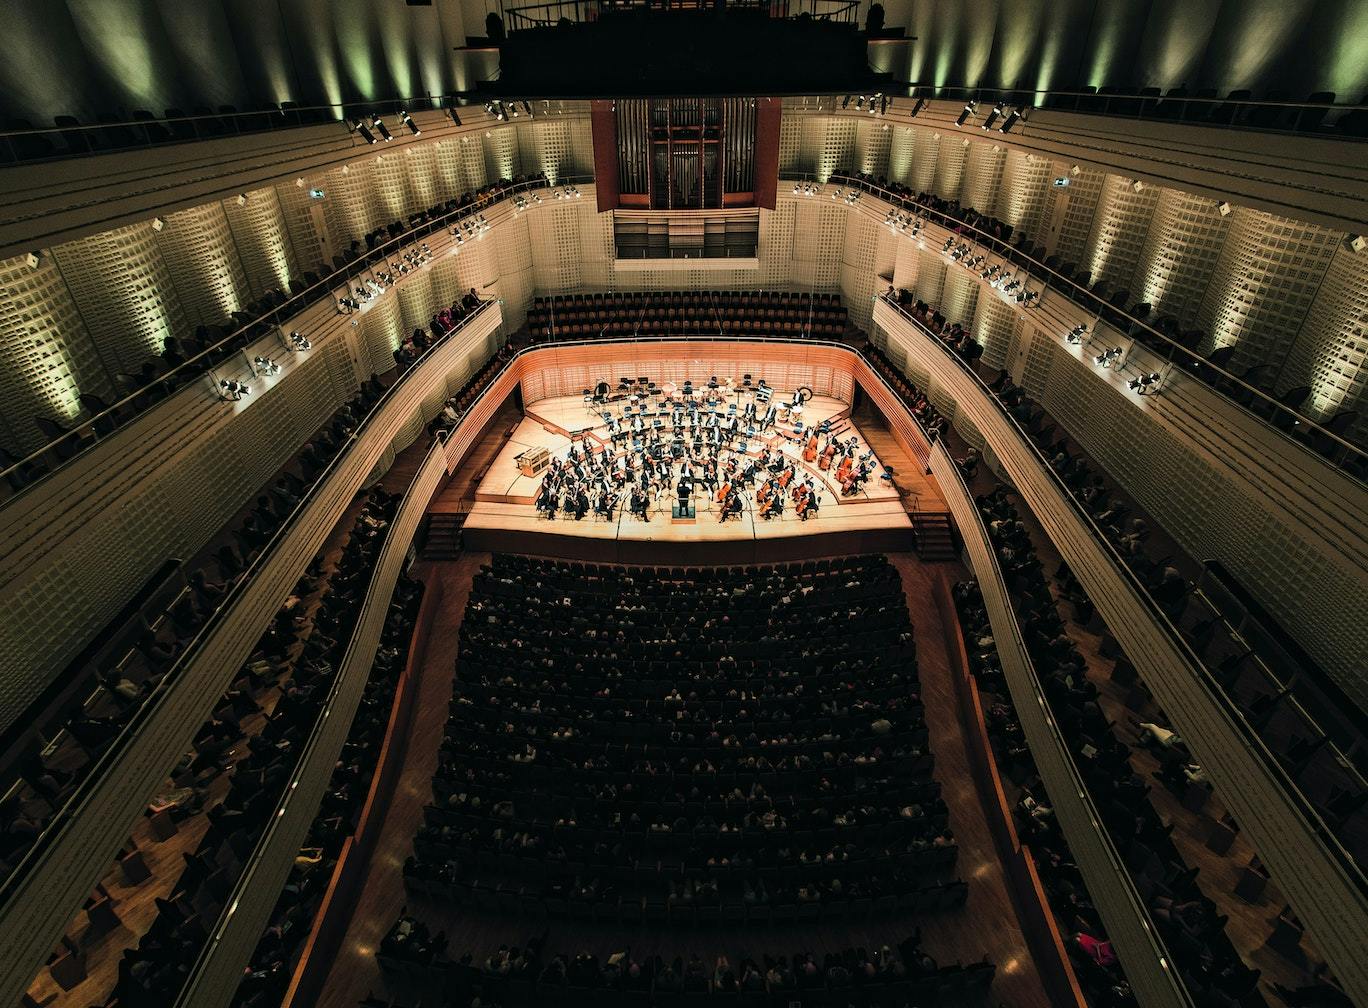 Klassisches Konzert im Konzertsaal des KKL Luzern mit Sicht vom 4. Balkon auf die Bühne.